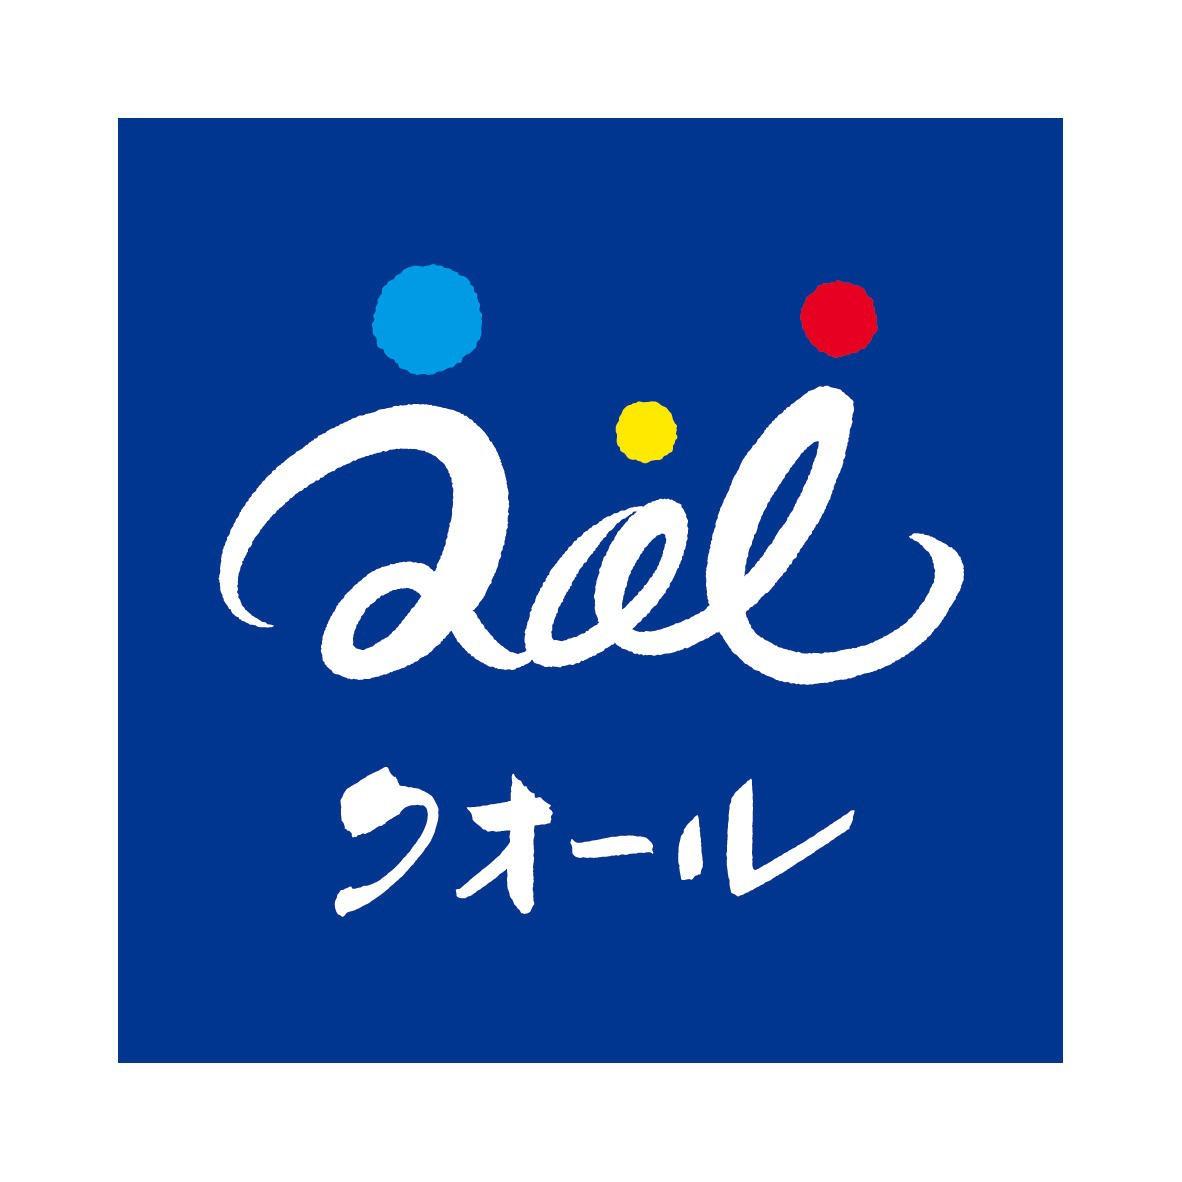 クオール薬局豊里店 Logo